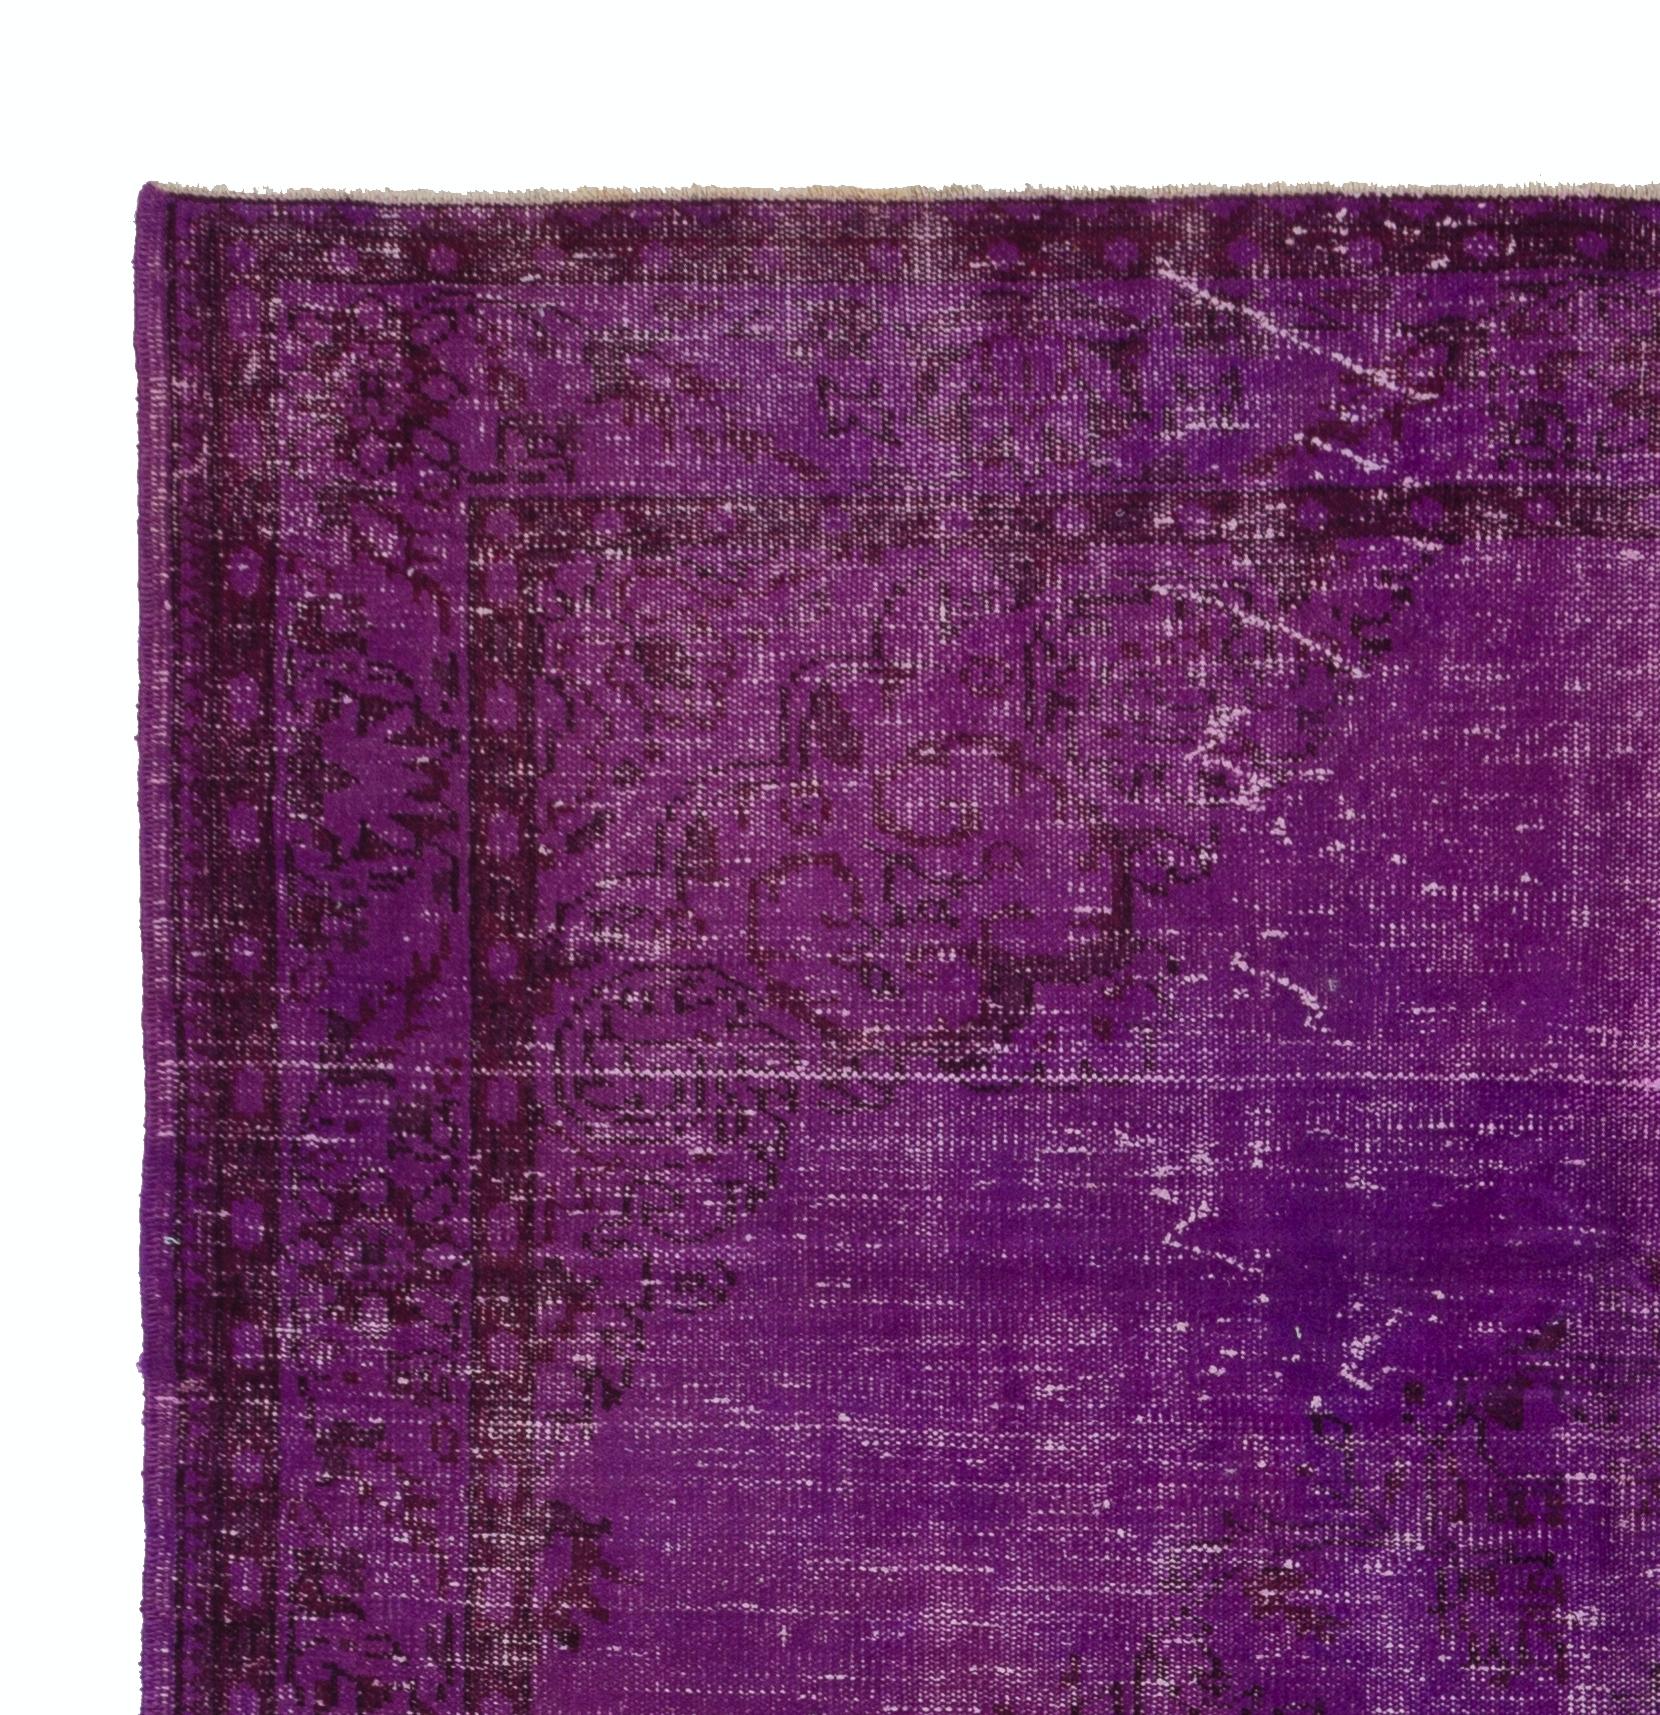 Un tapis turc vintage fait à la main et teinté en violet pour les intérieurs contemporains. Elle est finement nouée à la main, lavée professionnellement et possède des poils de laine bas sur une base de coton. Le tapis est robuste et peut être